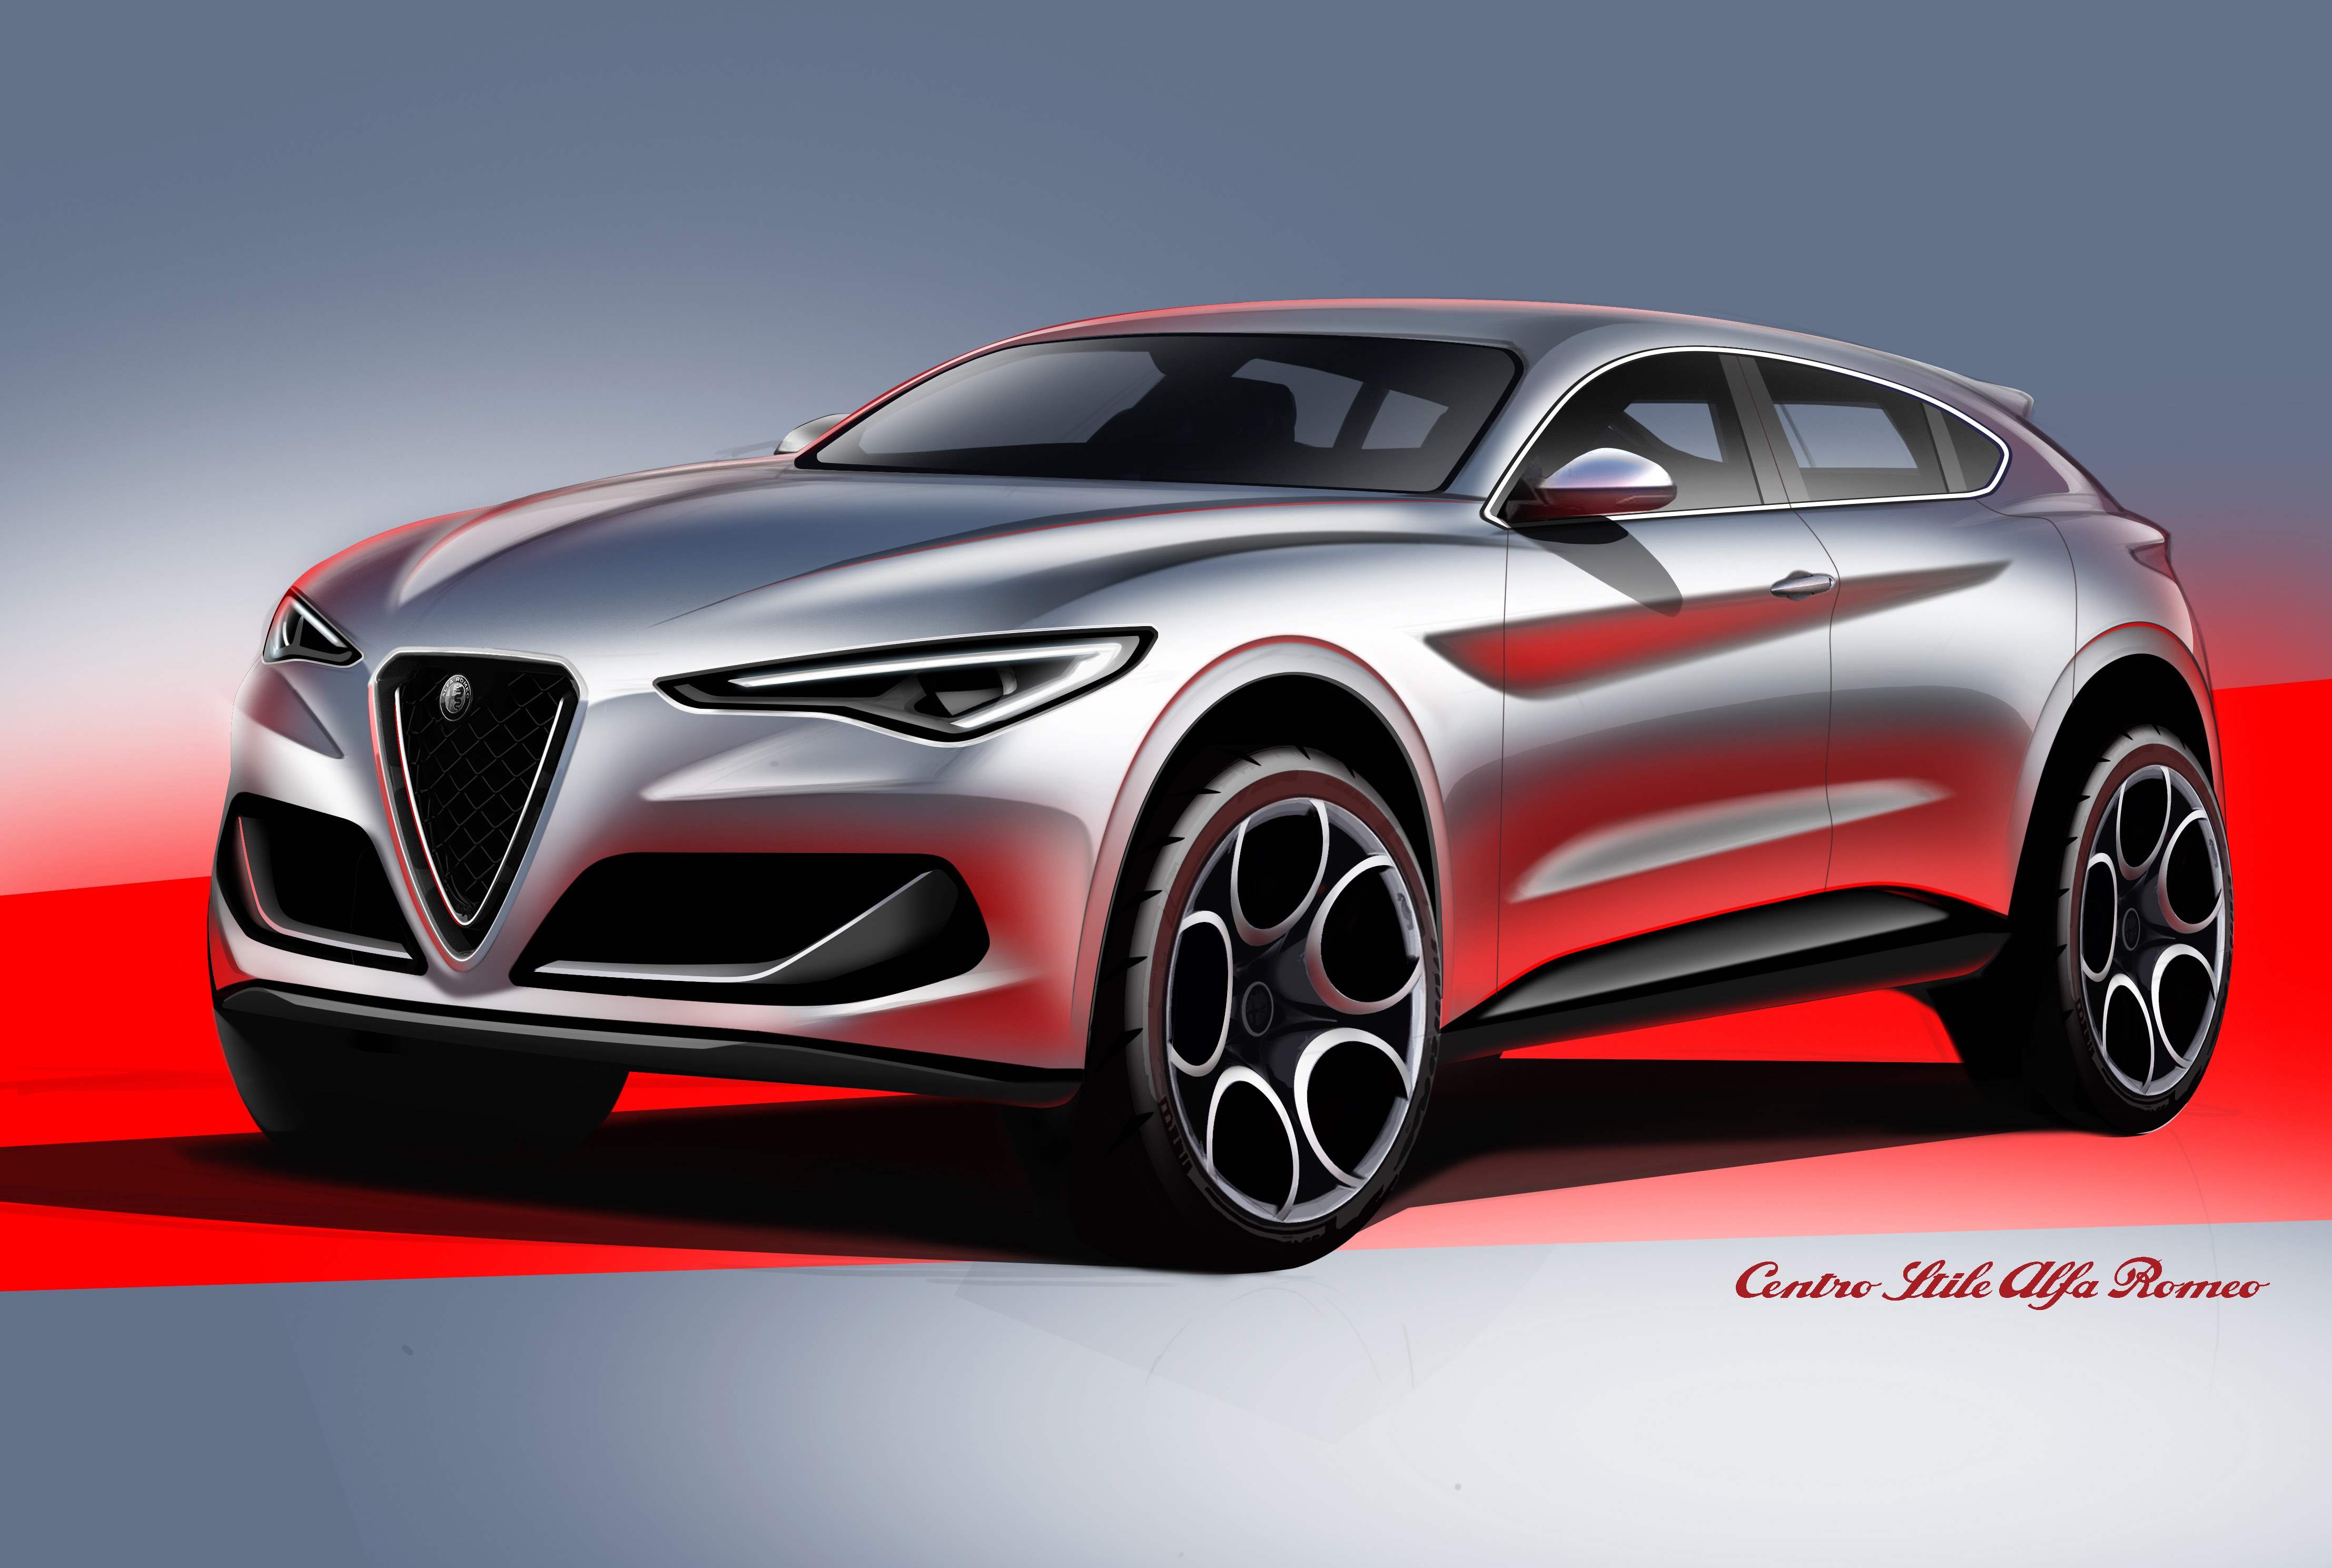 Alfa Romeo prepara um novo SUV depois do Stelvio